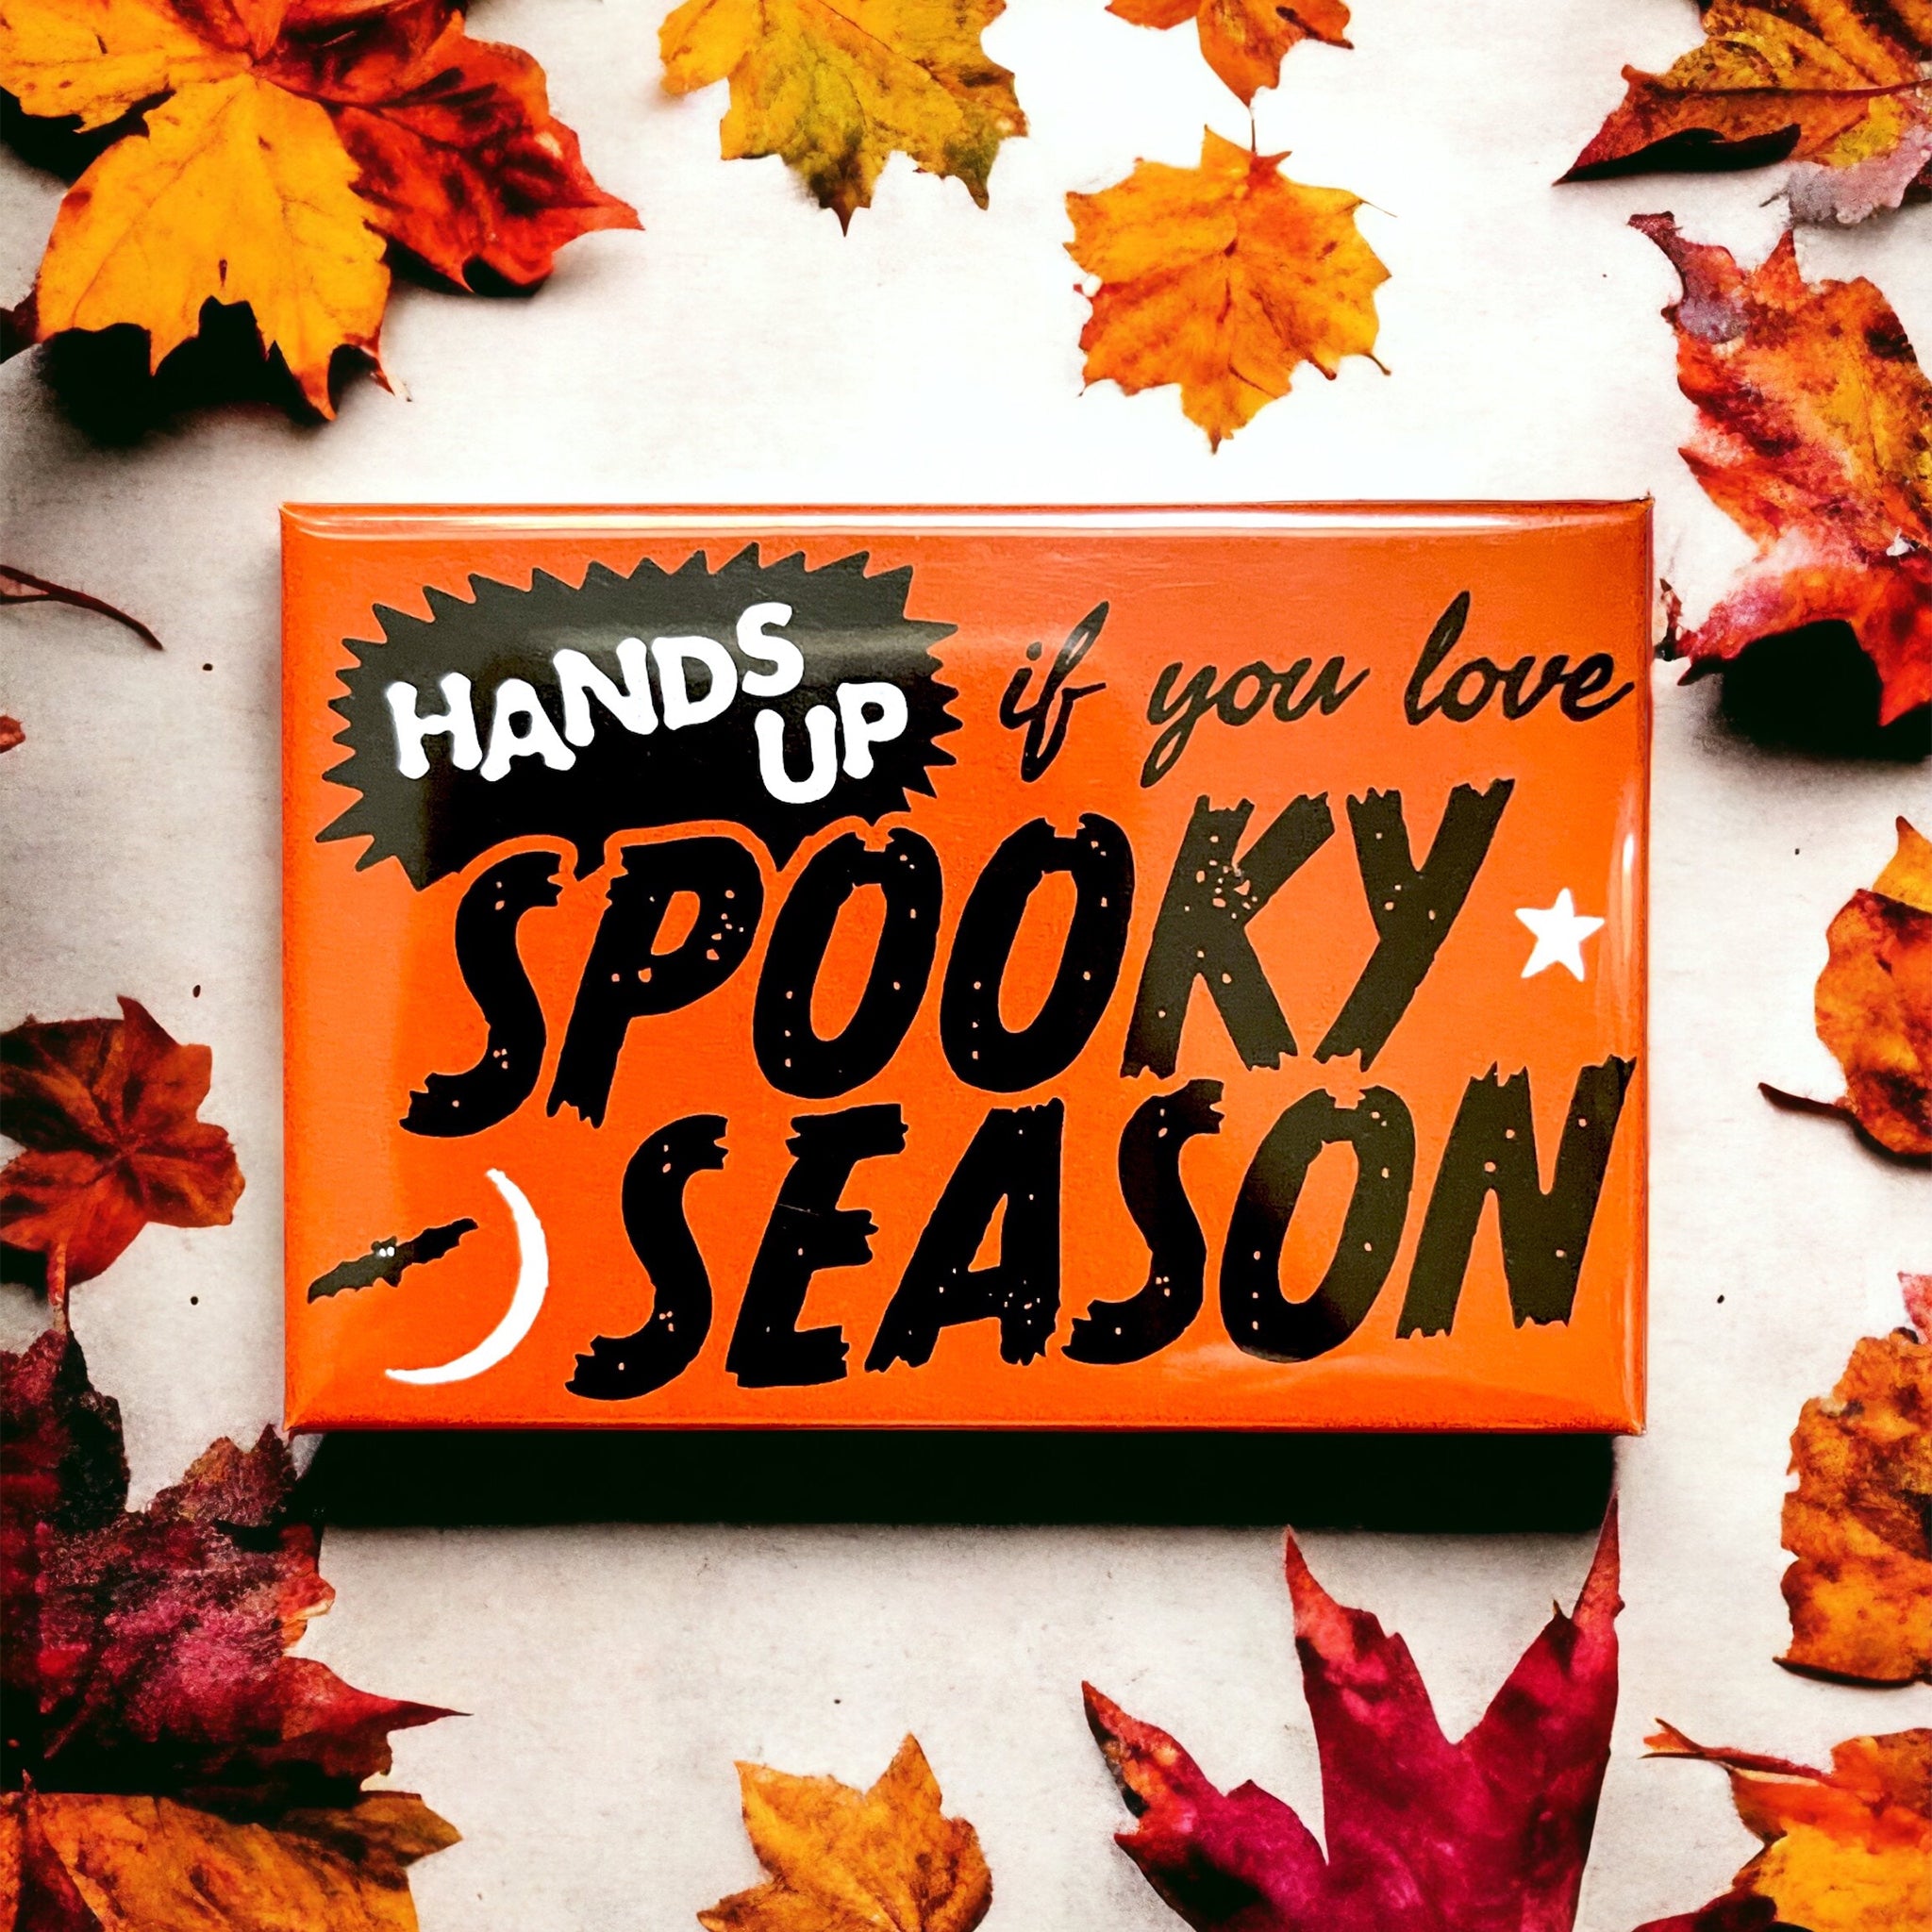 Spooky Season Magnet